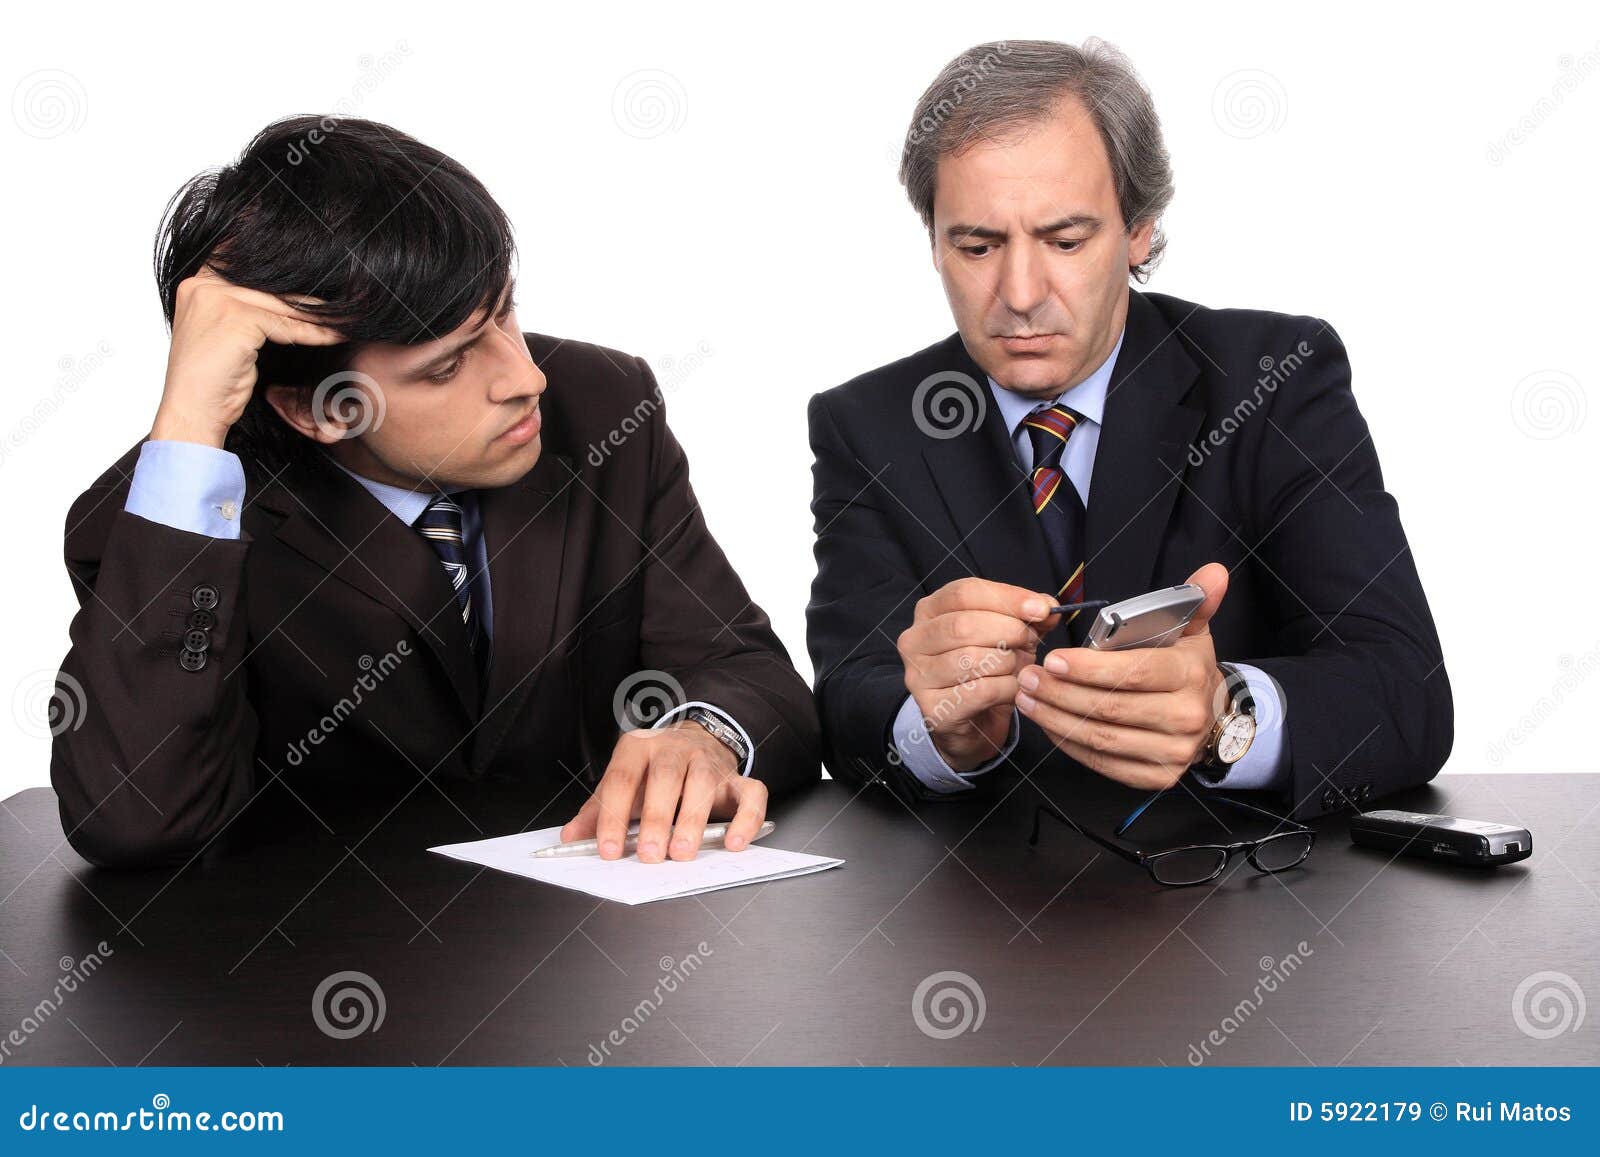 businessmen working